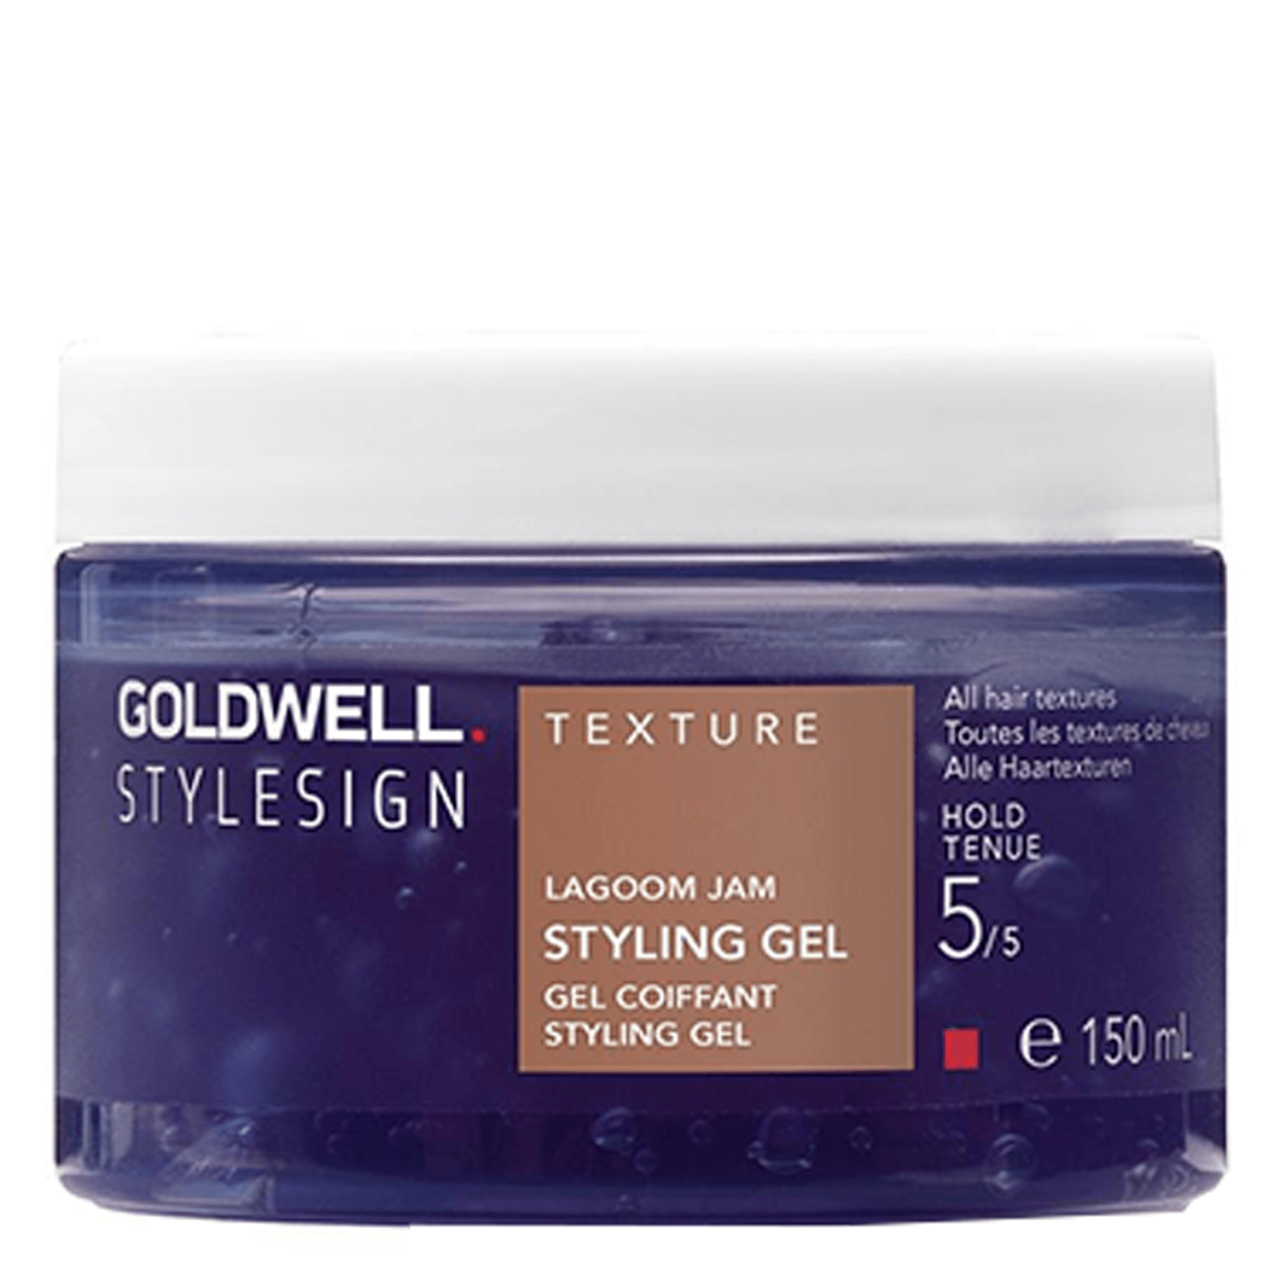 StyleSign - texture lagoom jam styling gel von Goldwell